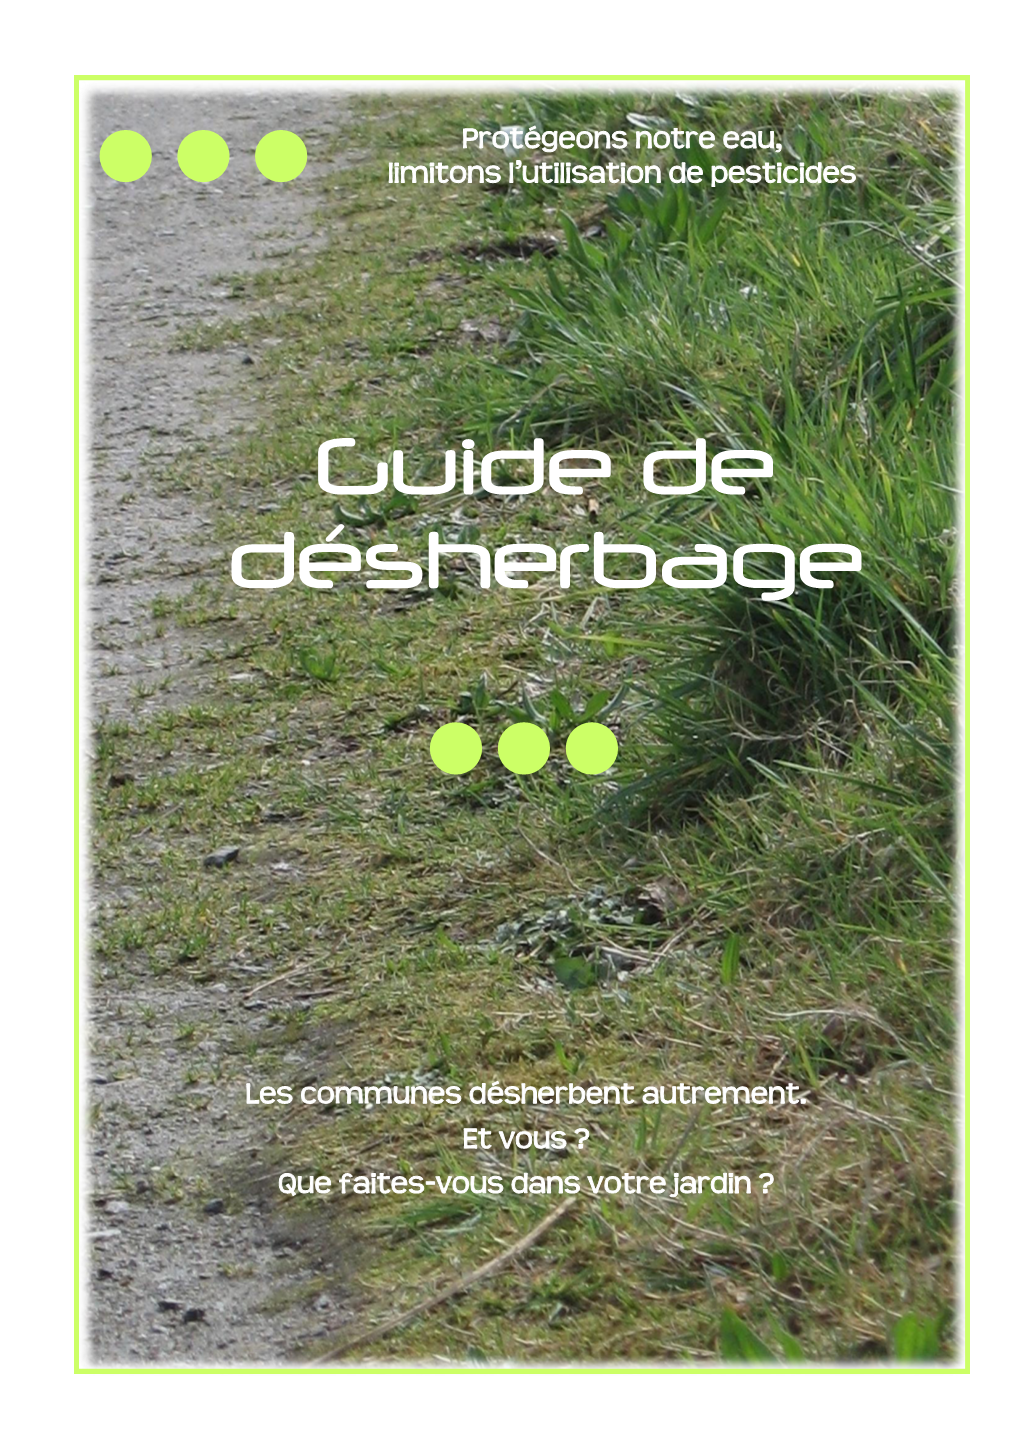 Guide De Désherbage », Est Un Document De Sensibilisation À